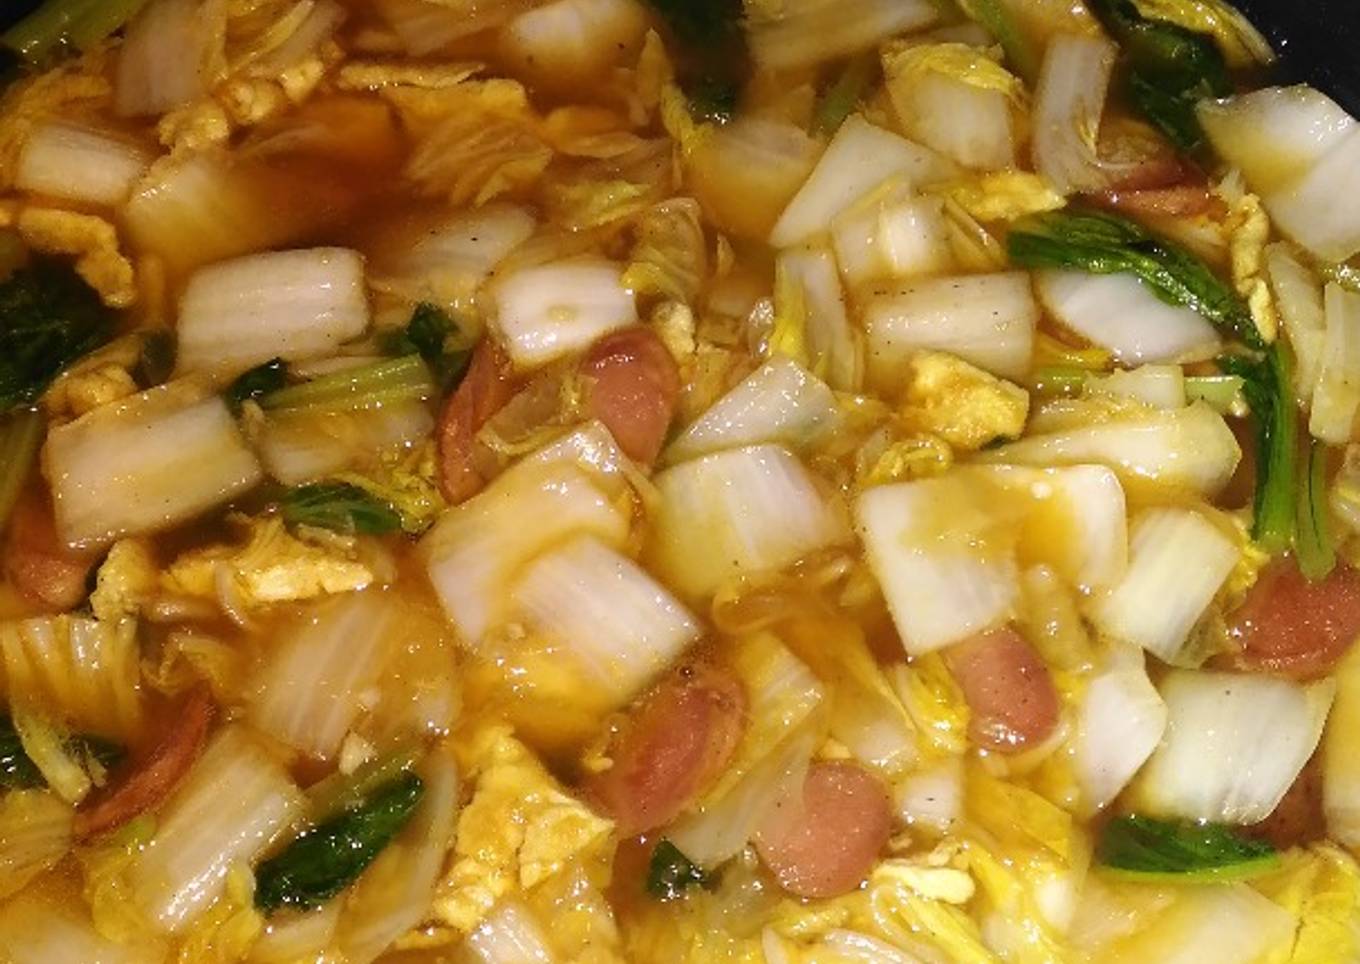 Capjay kuah simple - resep kuliner nusantara